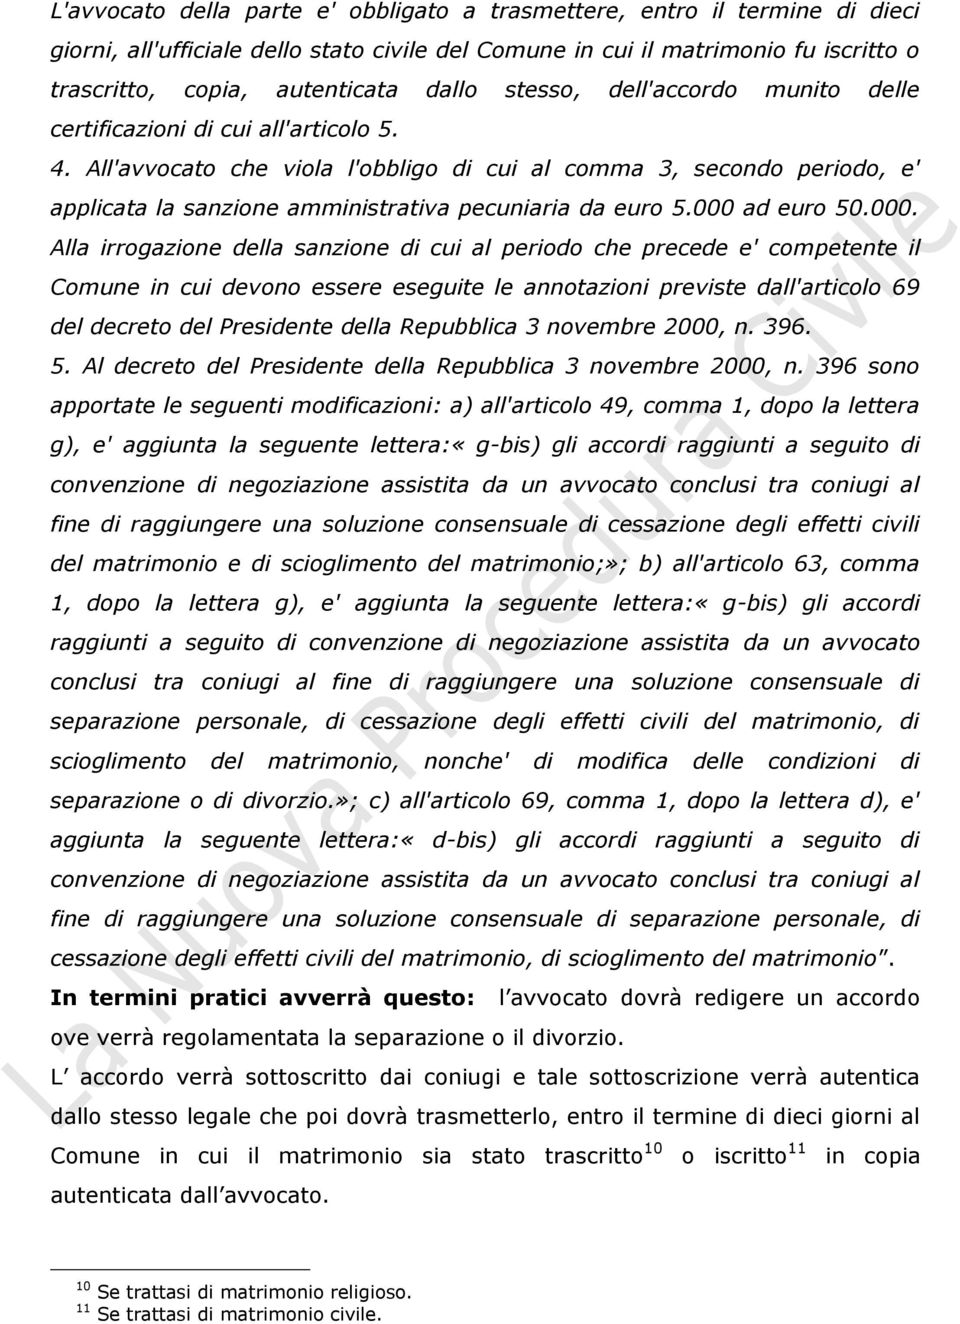 All'avvocato che viola l'obbligo di cui al comma 3, secondo periodo, e' applicata la sanzione amministrativa pecuniaria da euro 5.000 